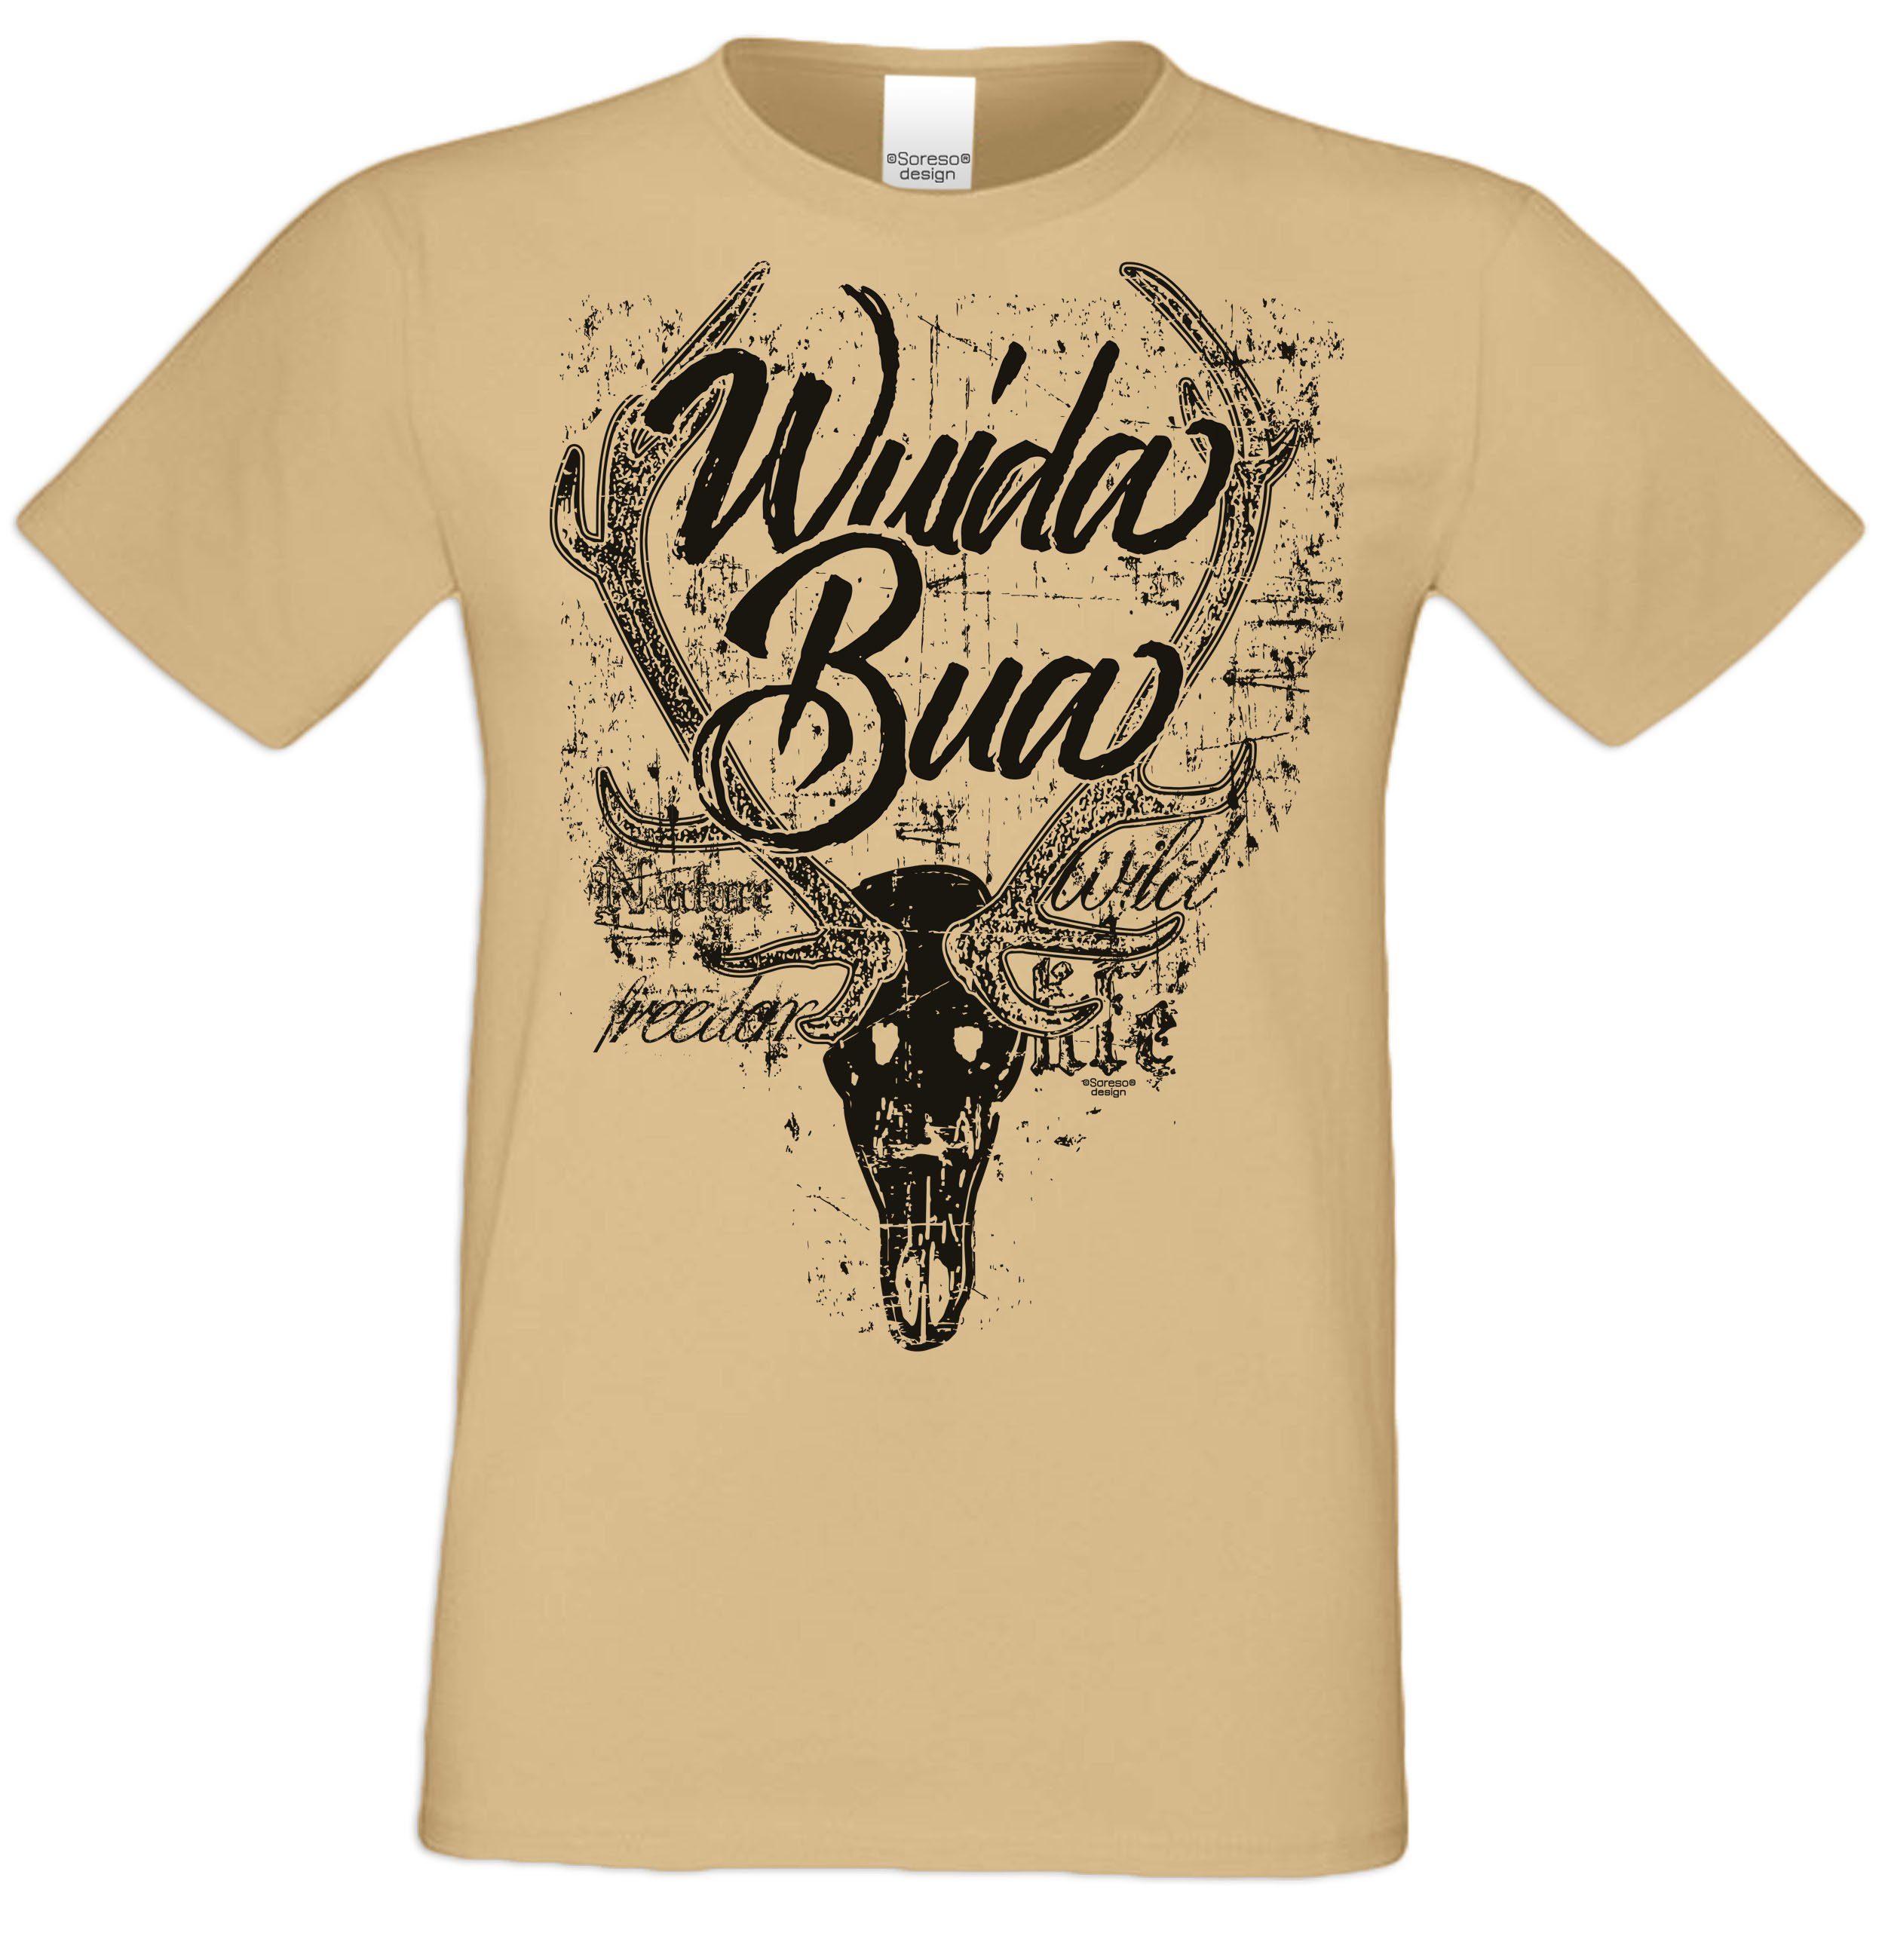 Männer sand Wuida T-Shirt Herren T-Shirt Trachtenshirt Bua Soreso® Trachten (Ein T-Shirt)